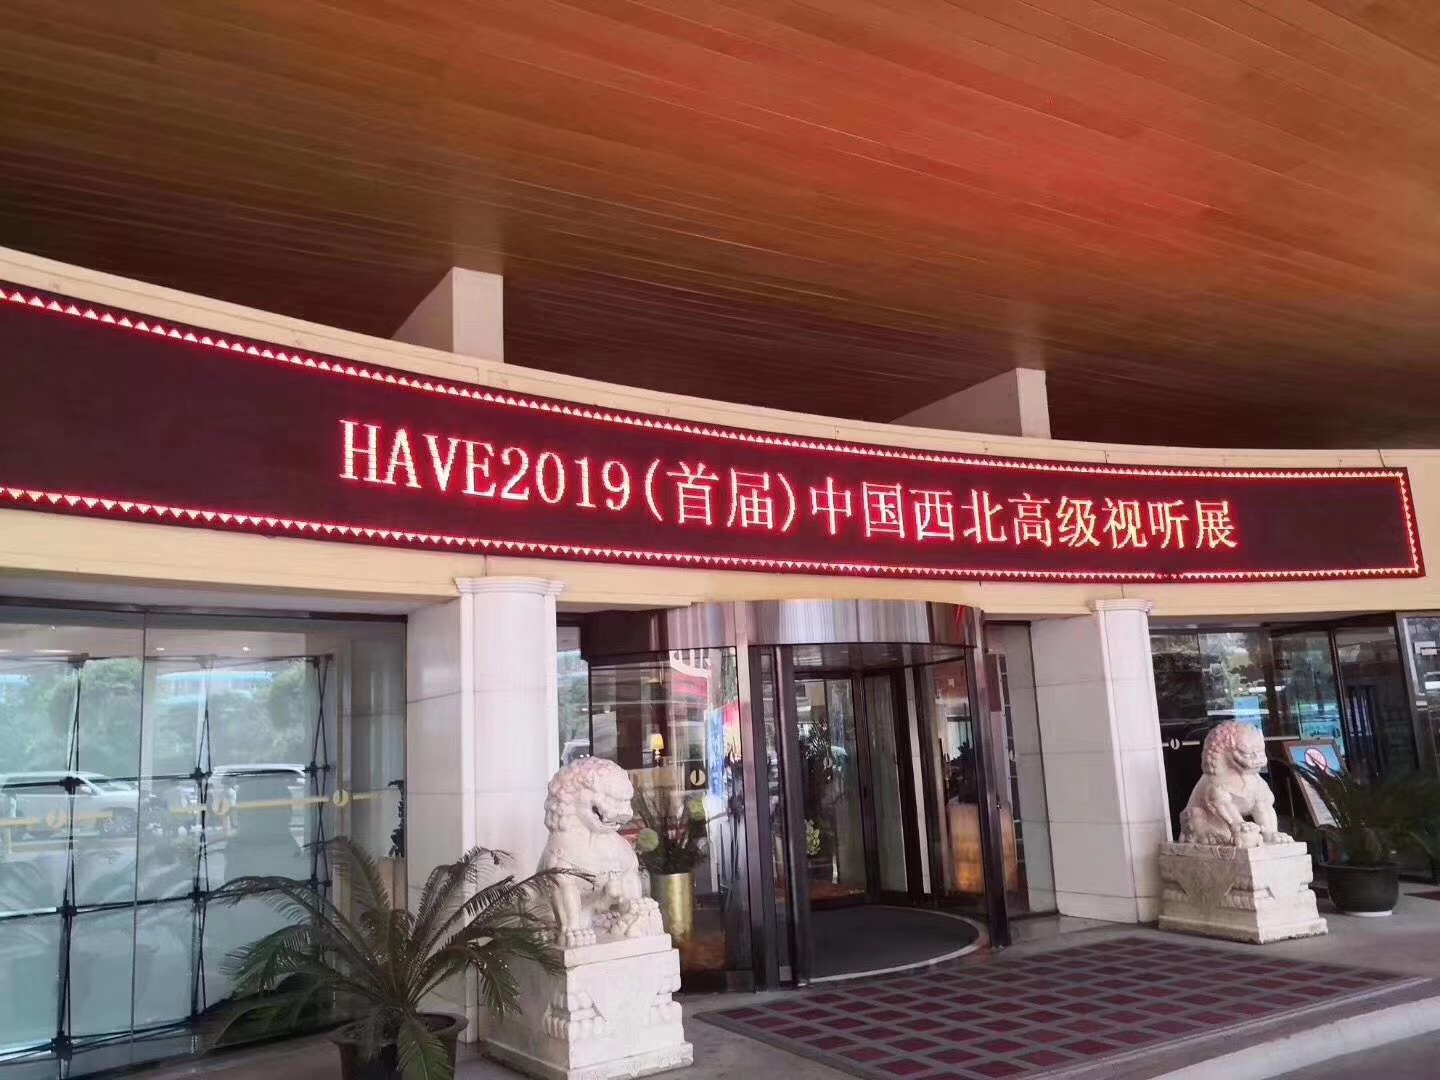 艾斯卡影音设备亮相HAVE2019(首届)中国西北高级视听展